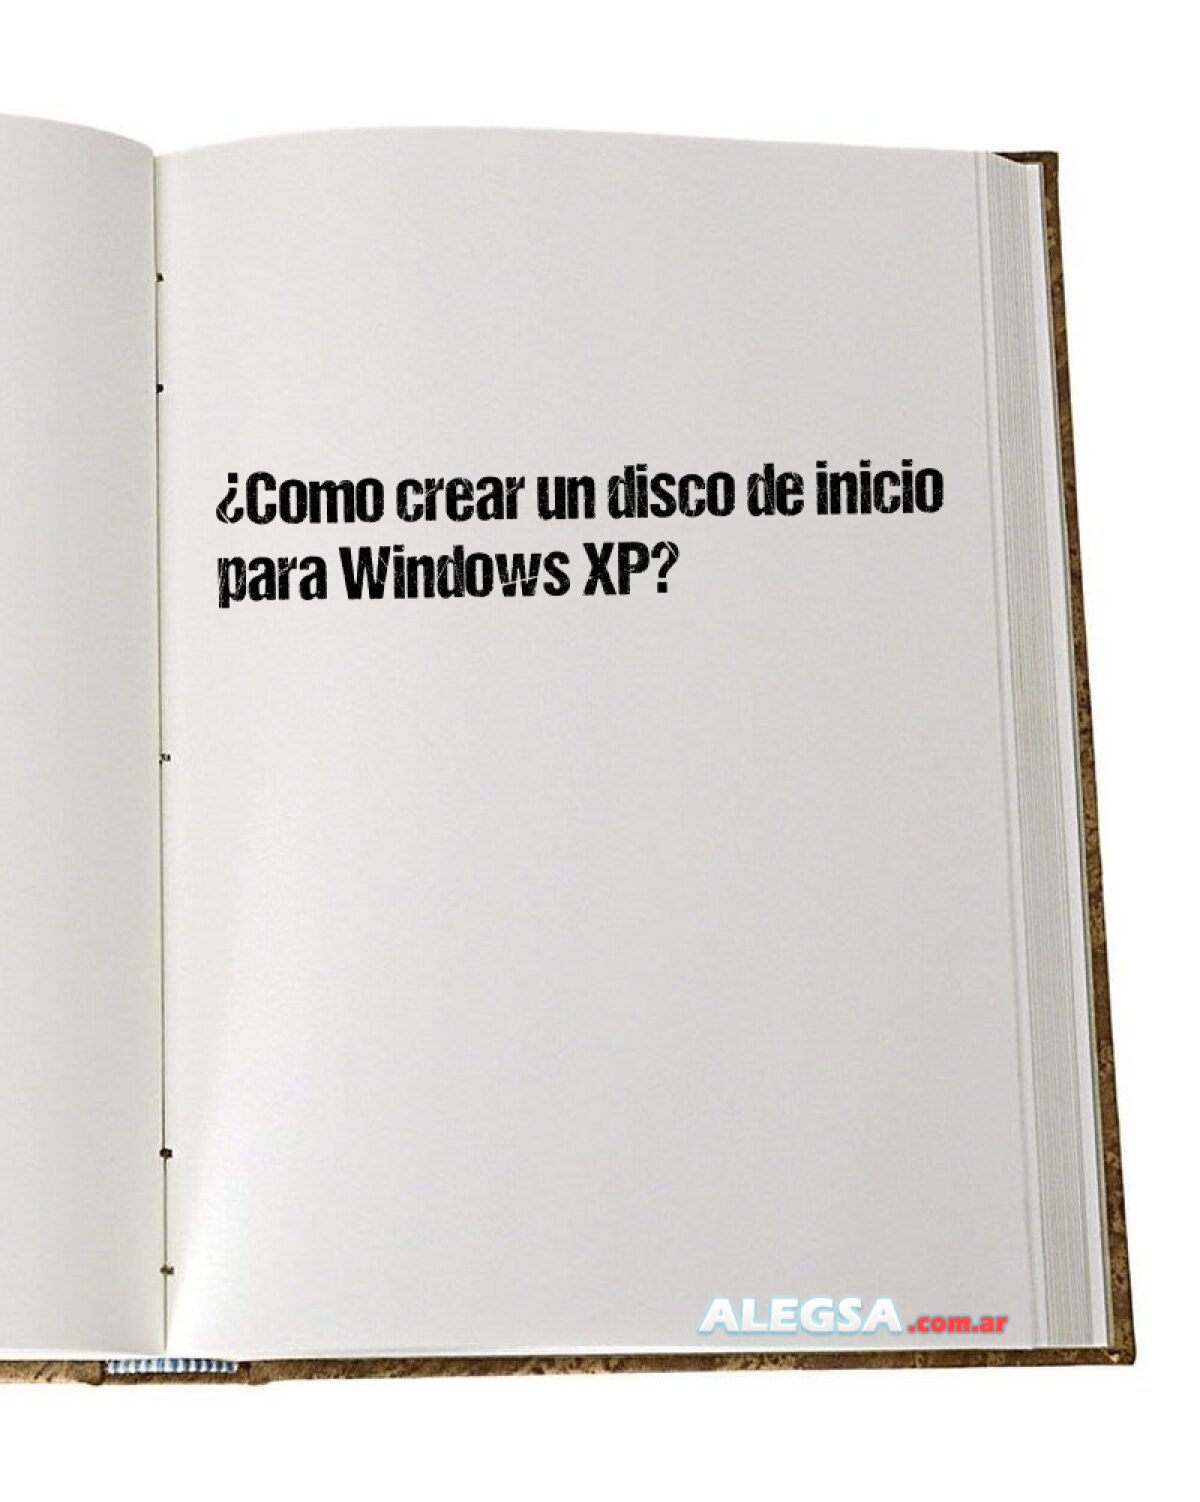 ¿Como crear un disco de inicio para Windows XP? 